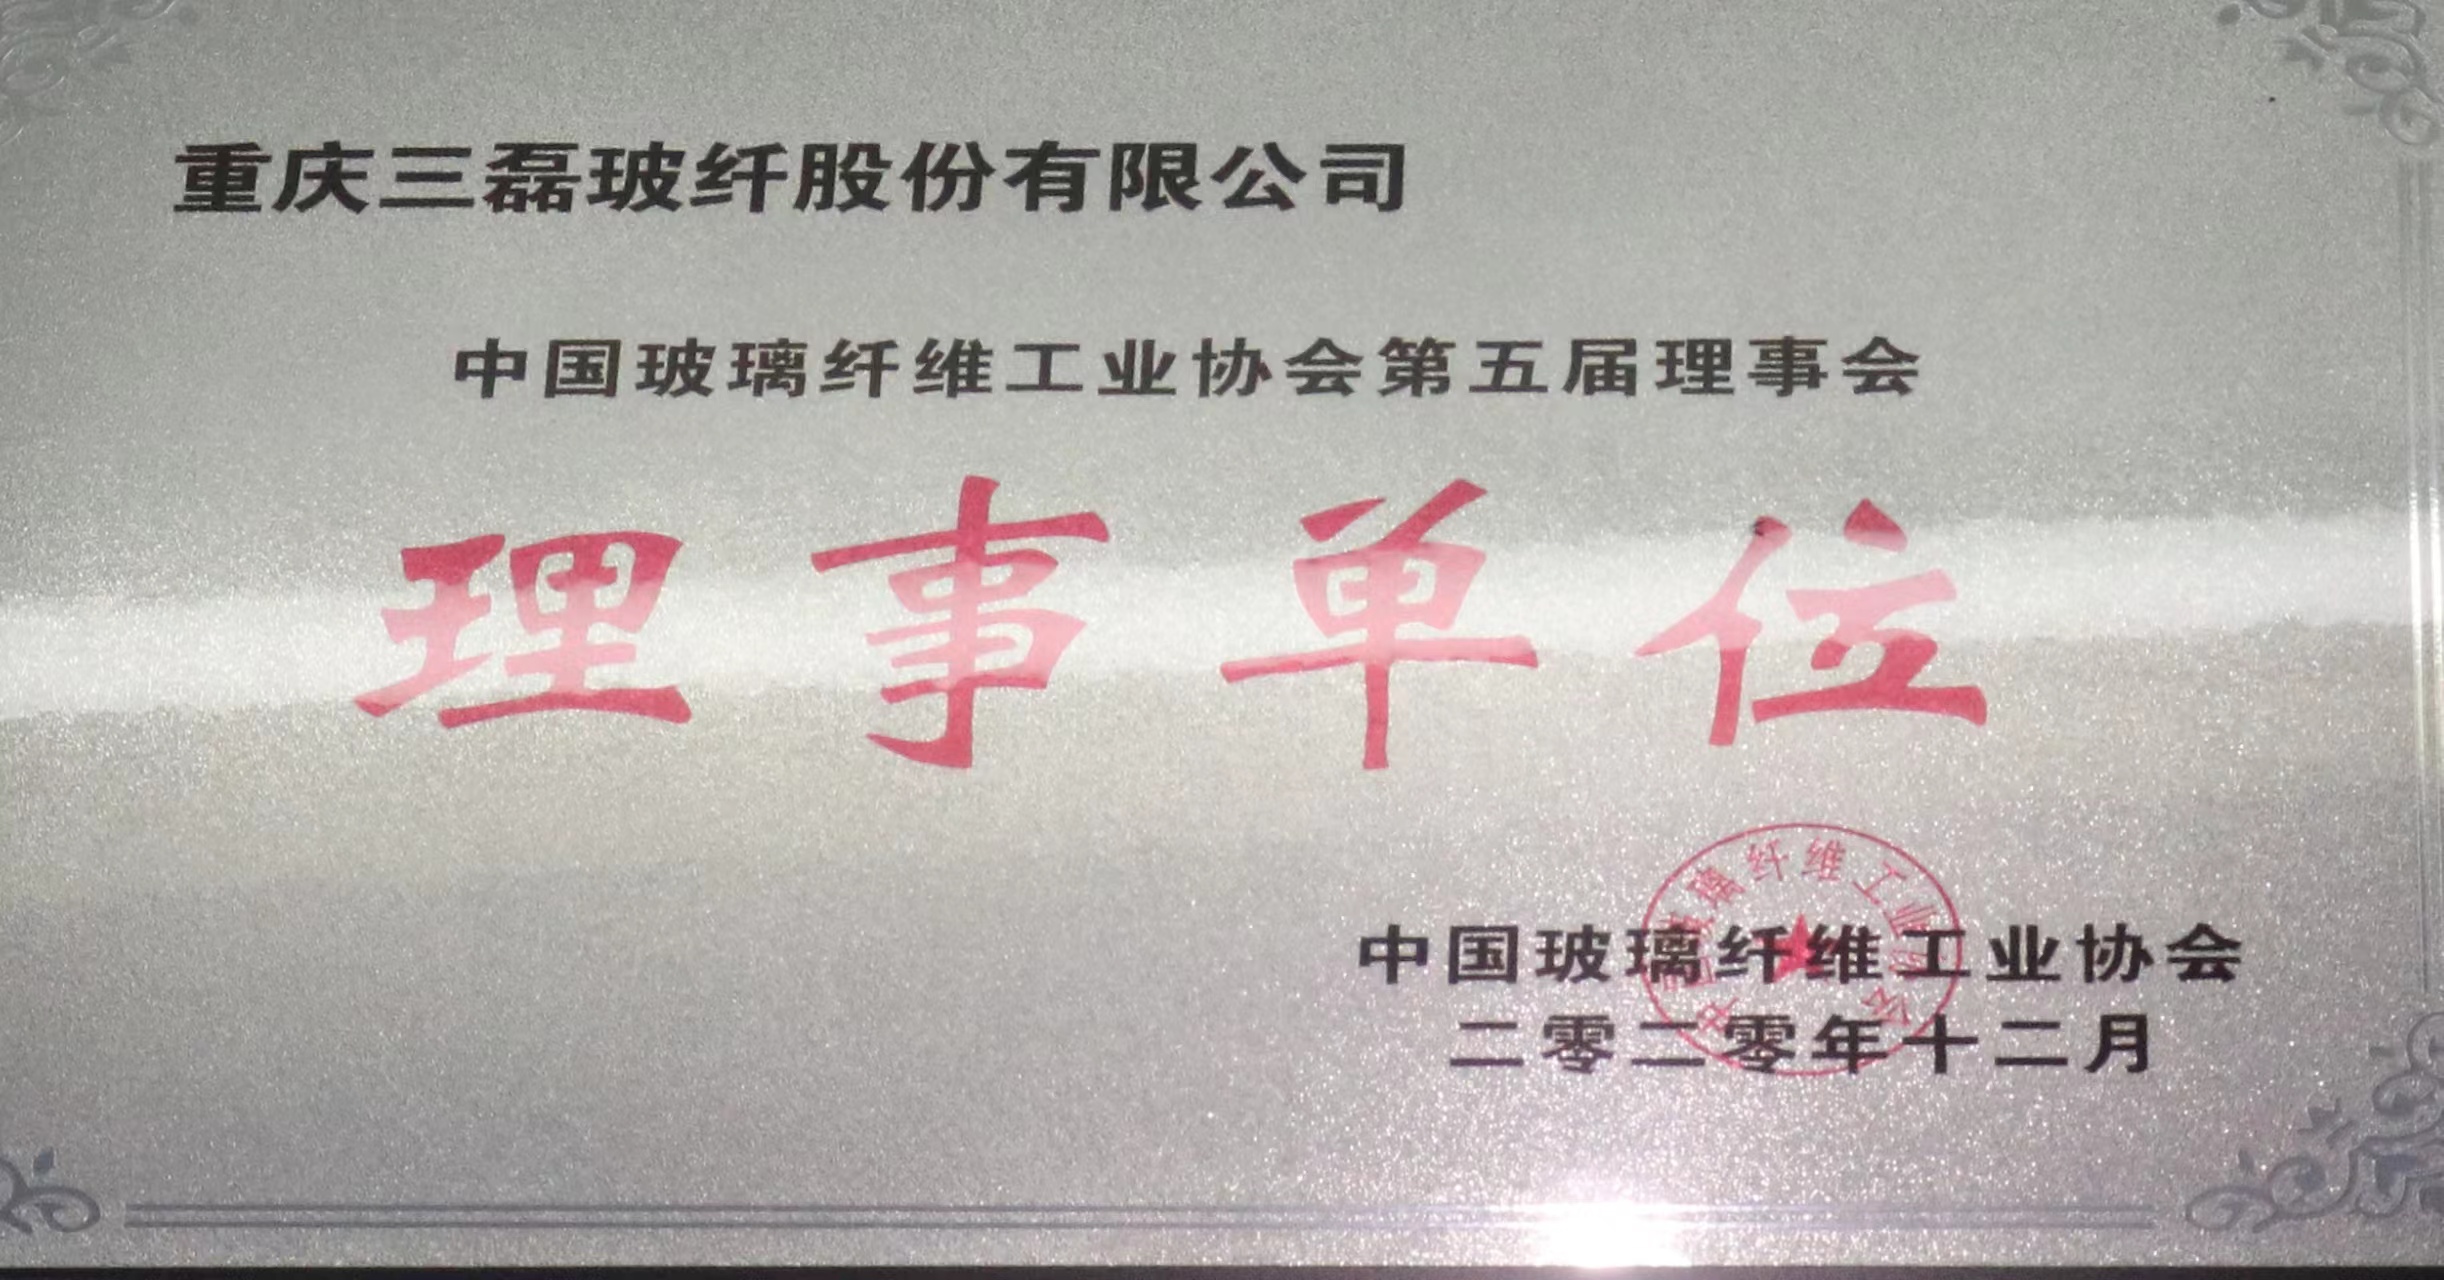 中国玻璃纤维工业协会理事单位